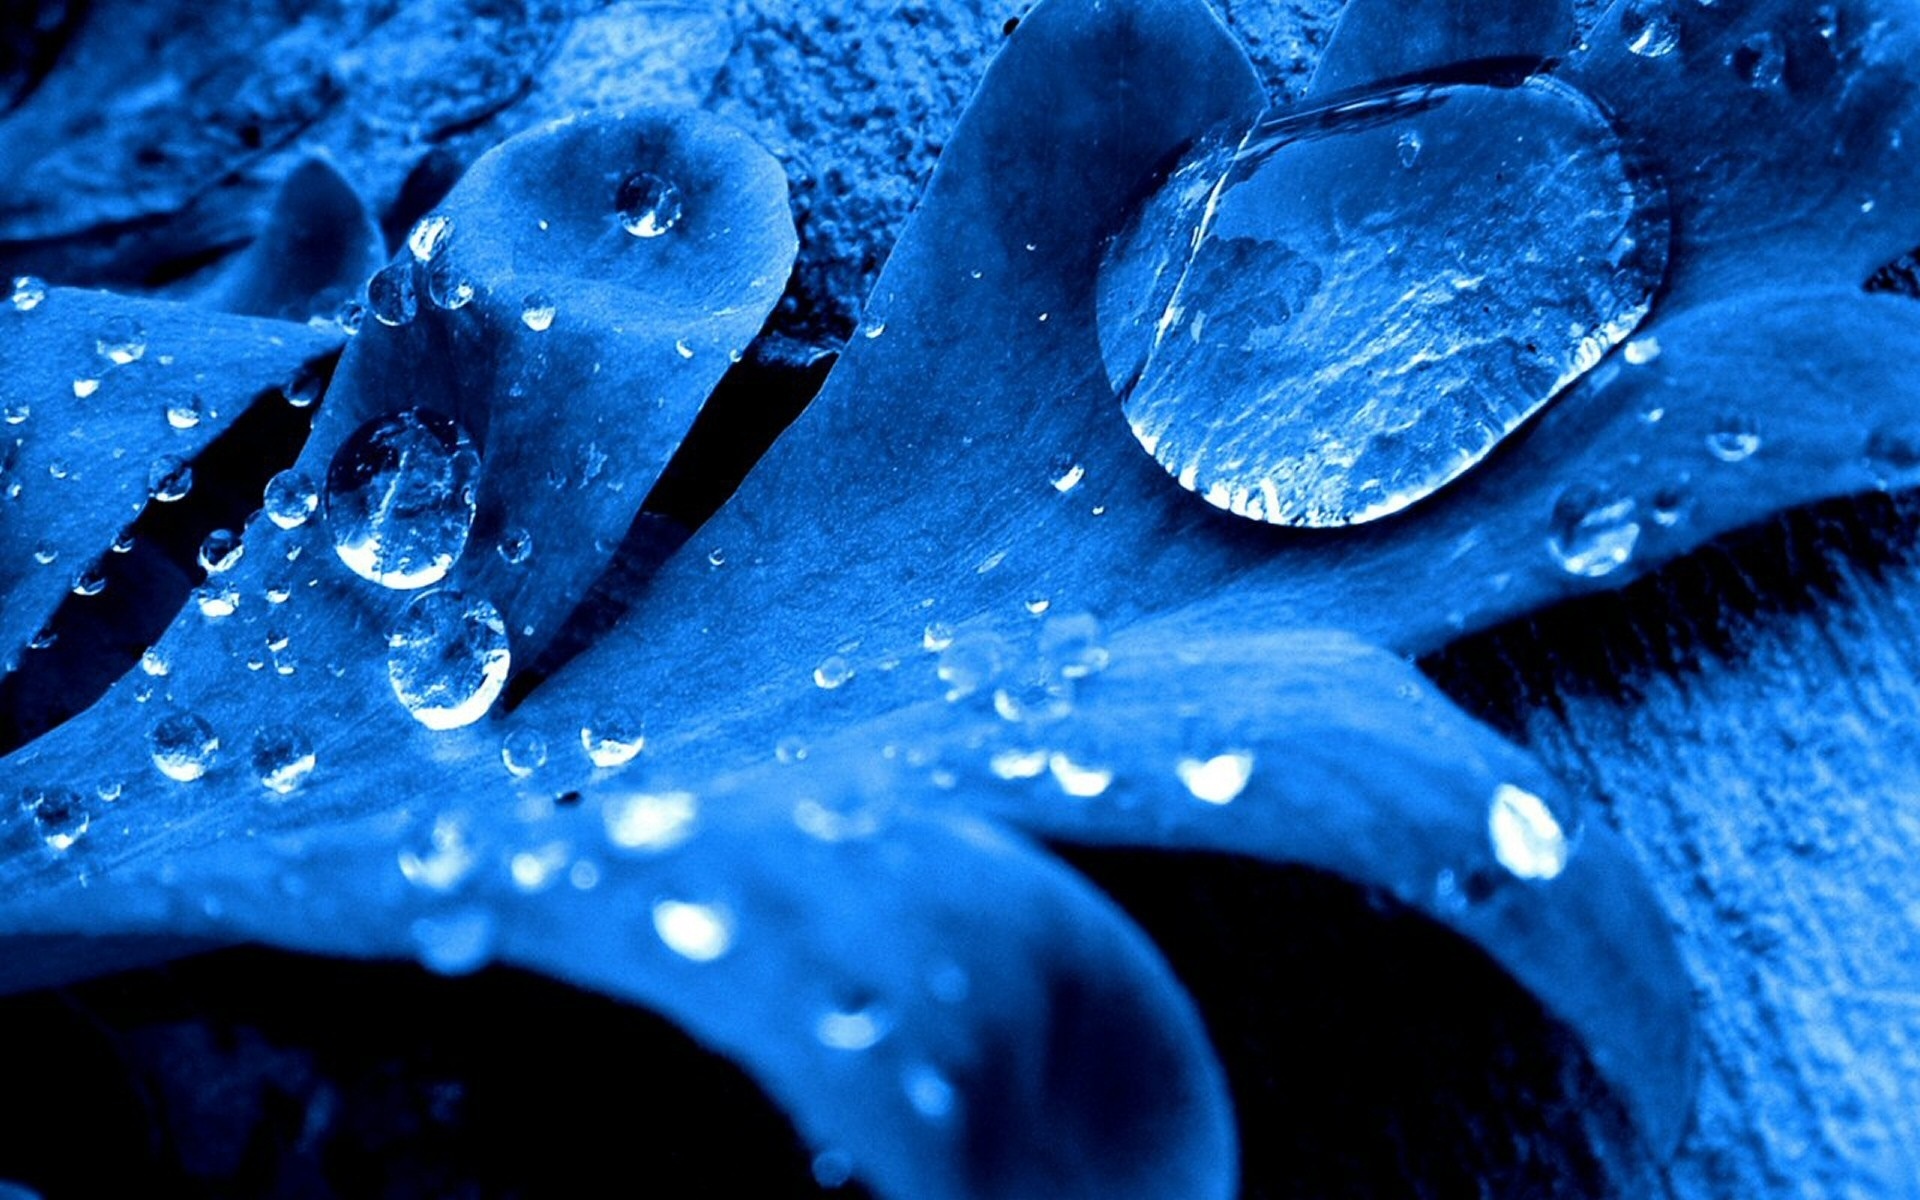 蓝叶,水滴壁纸1920x1200分辨率下载,蓝叶,水滴壁纸,高清图片,壁纸